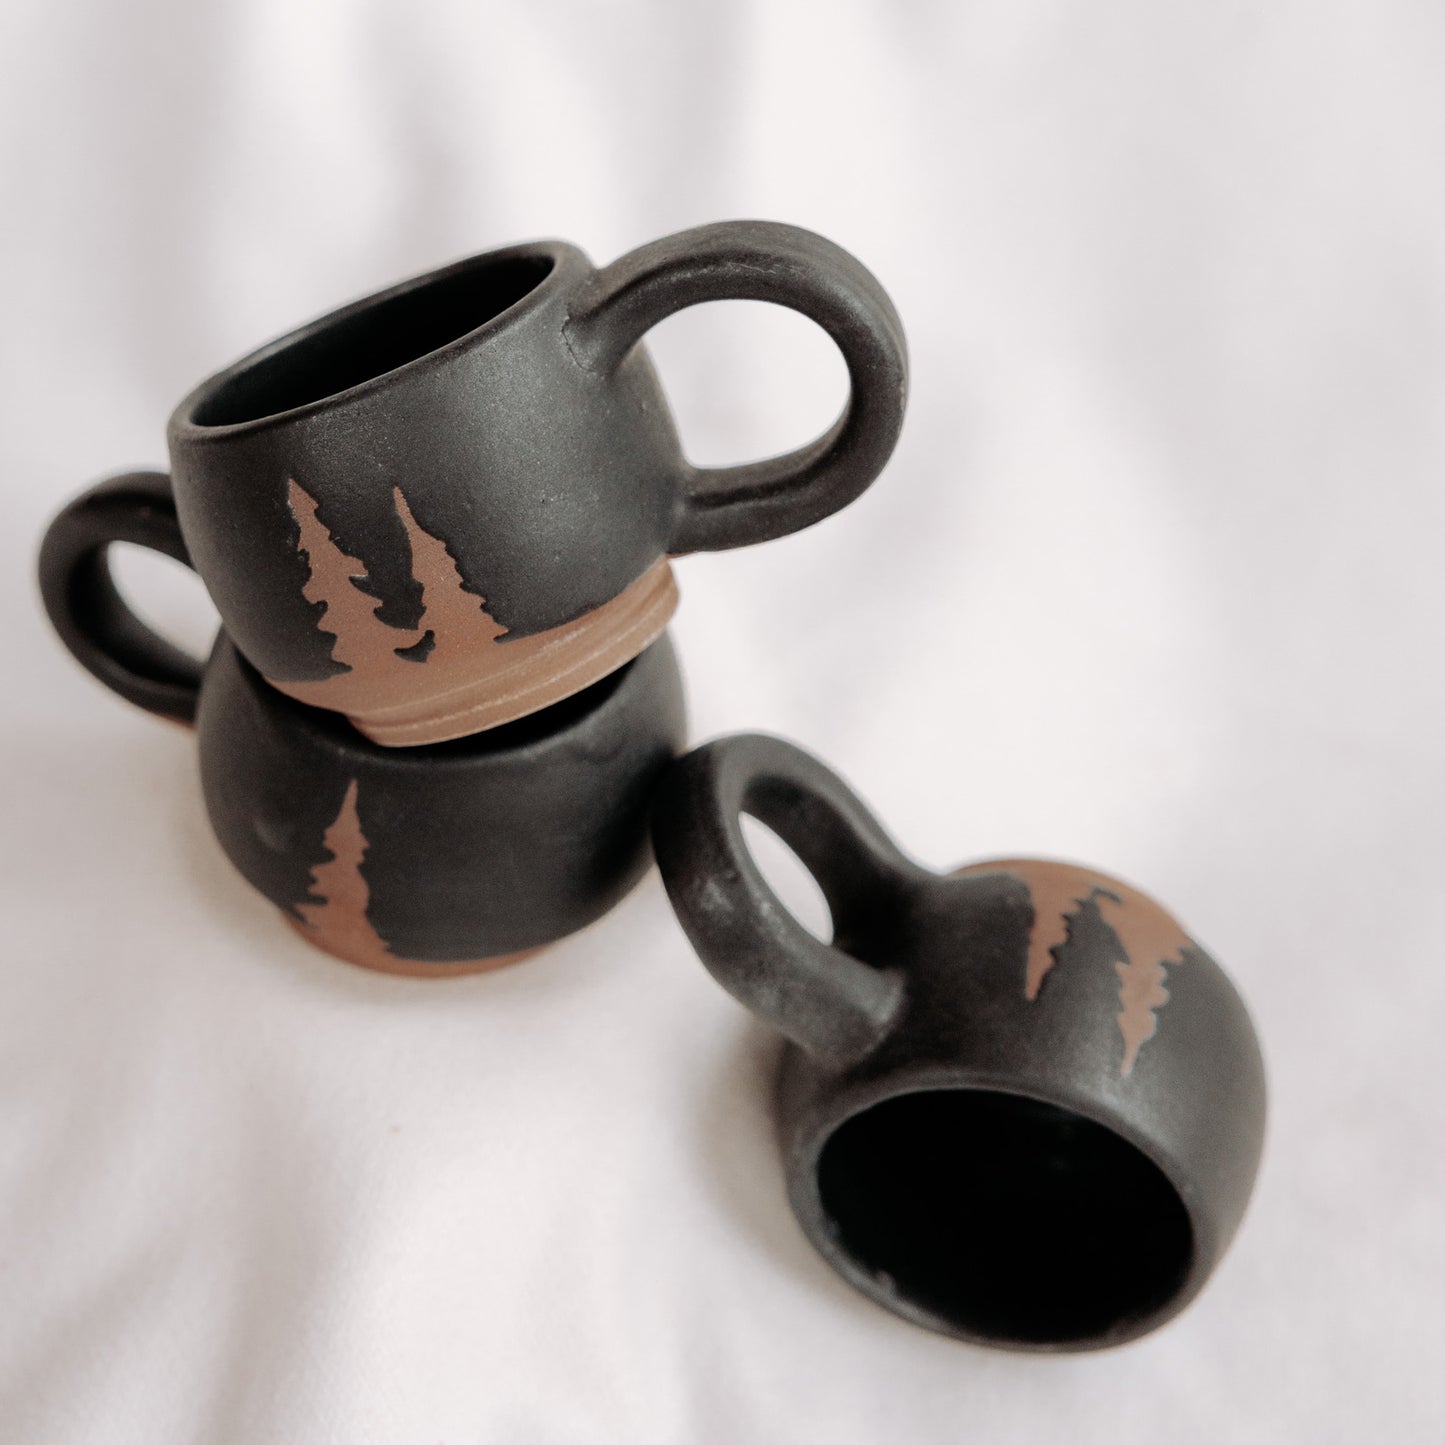 Evergreen Espresso Cups, Tiny Coffee Mug